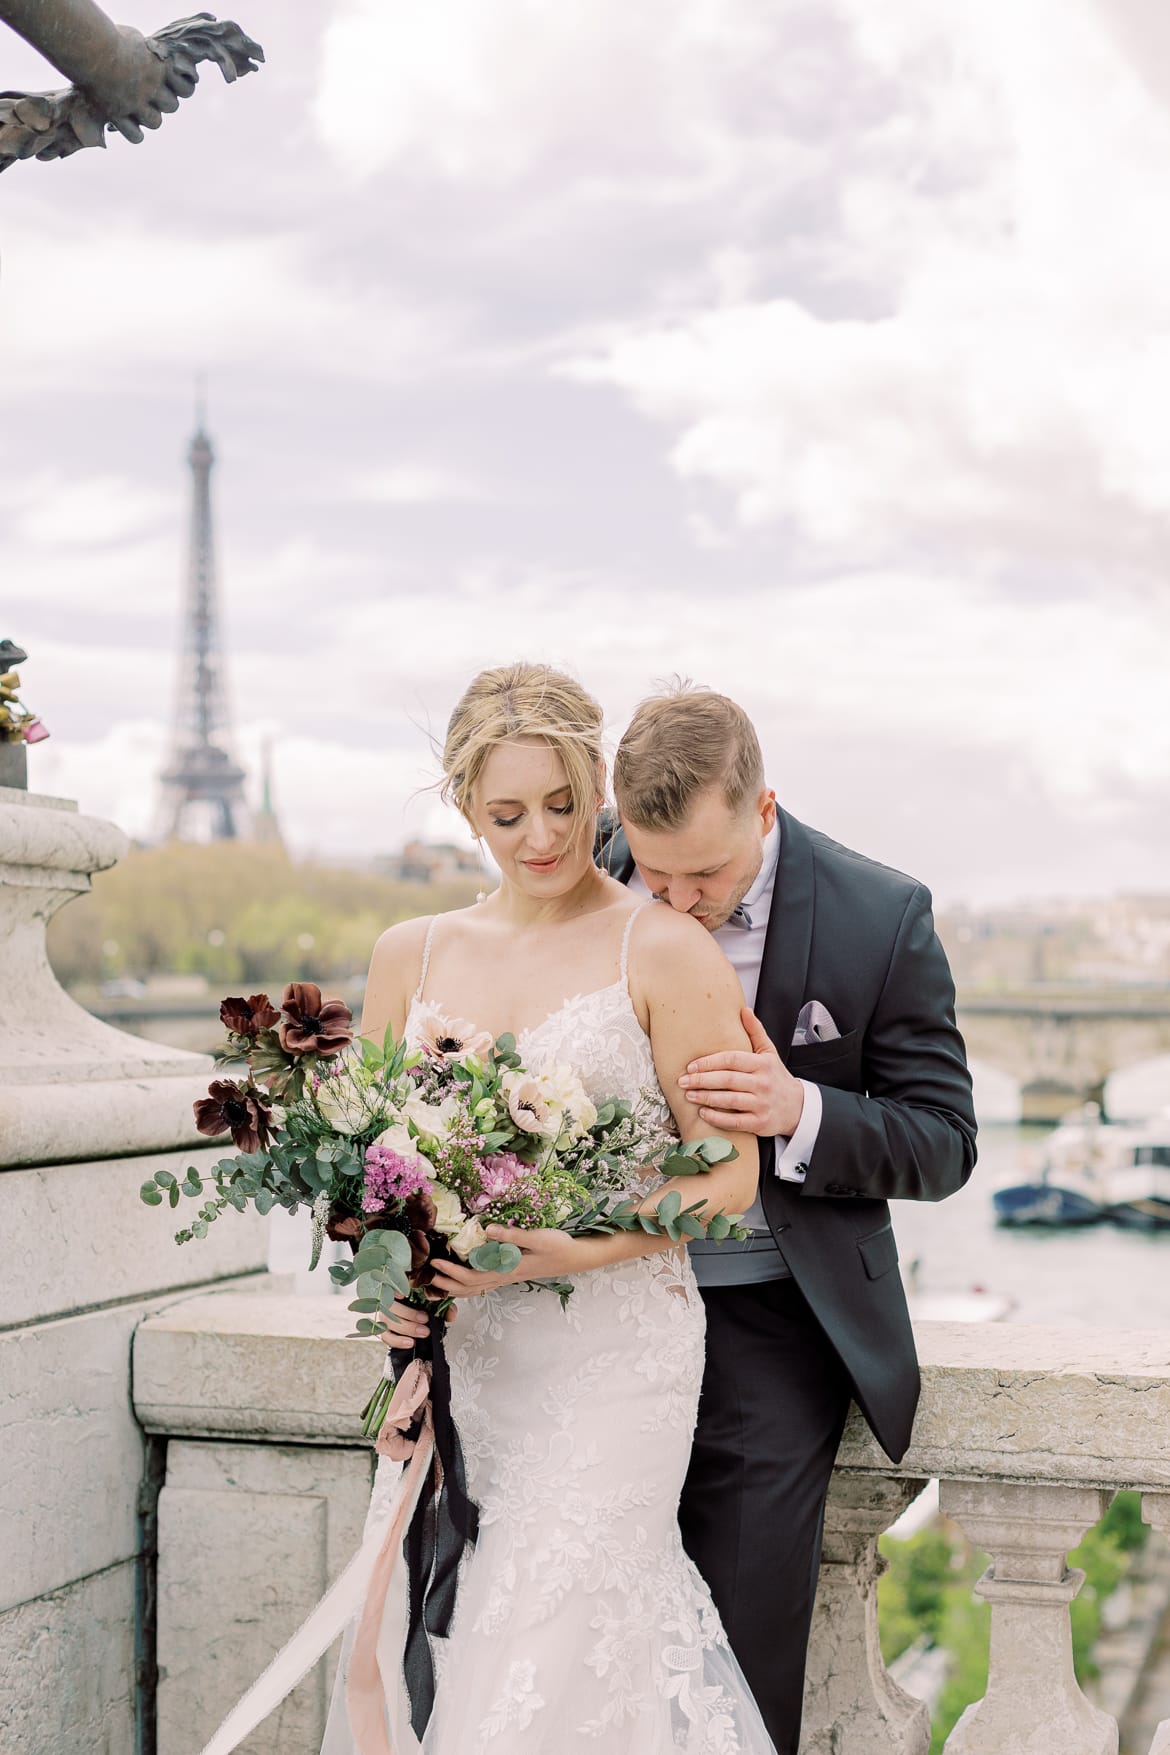 Bräutigam küsst seine Braut auf die Schulter; im Hintergrund sieht man den Eiffelturm